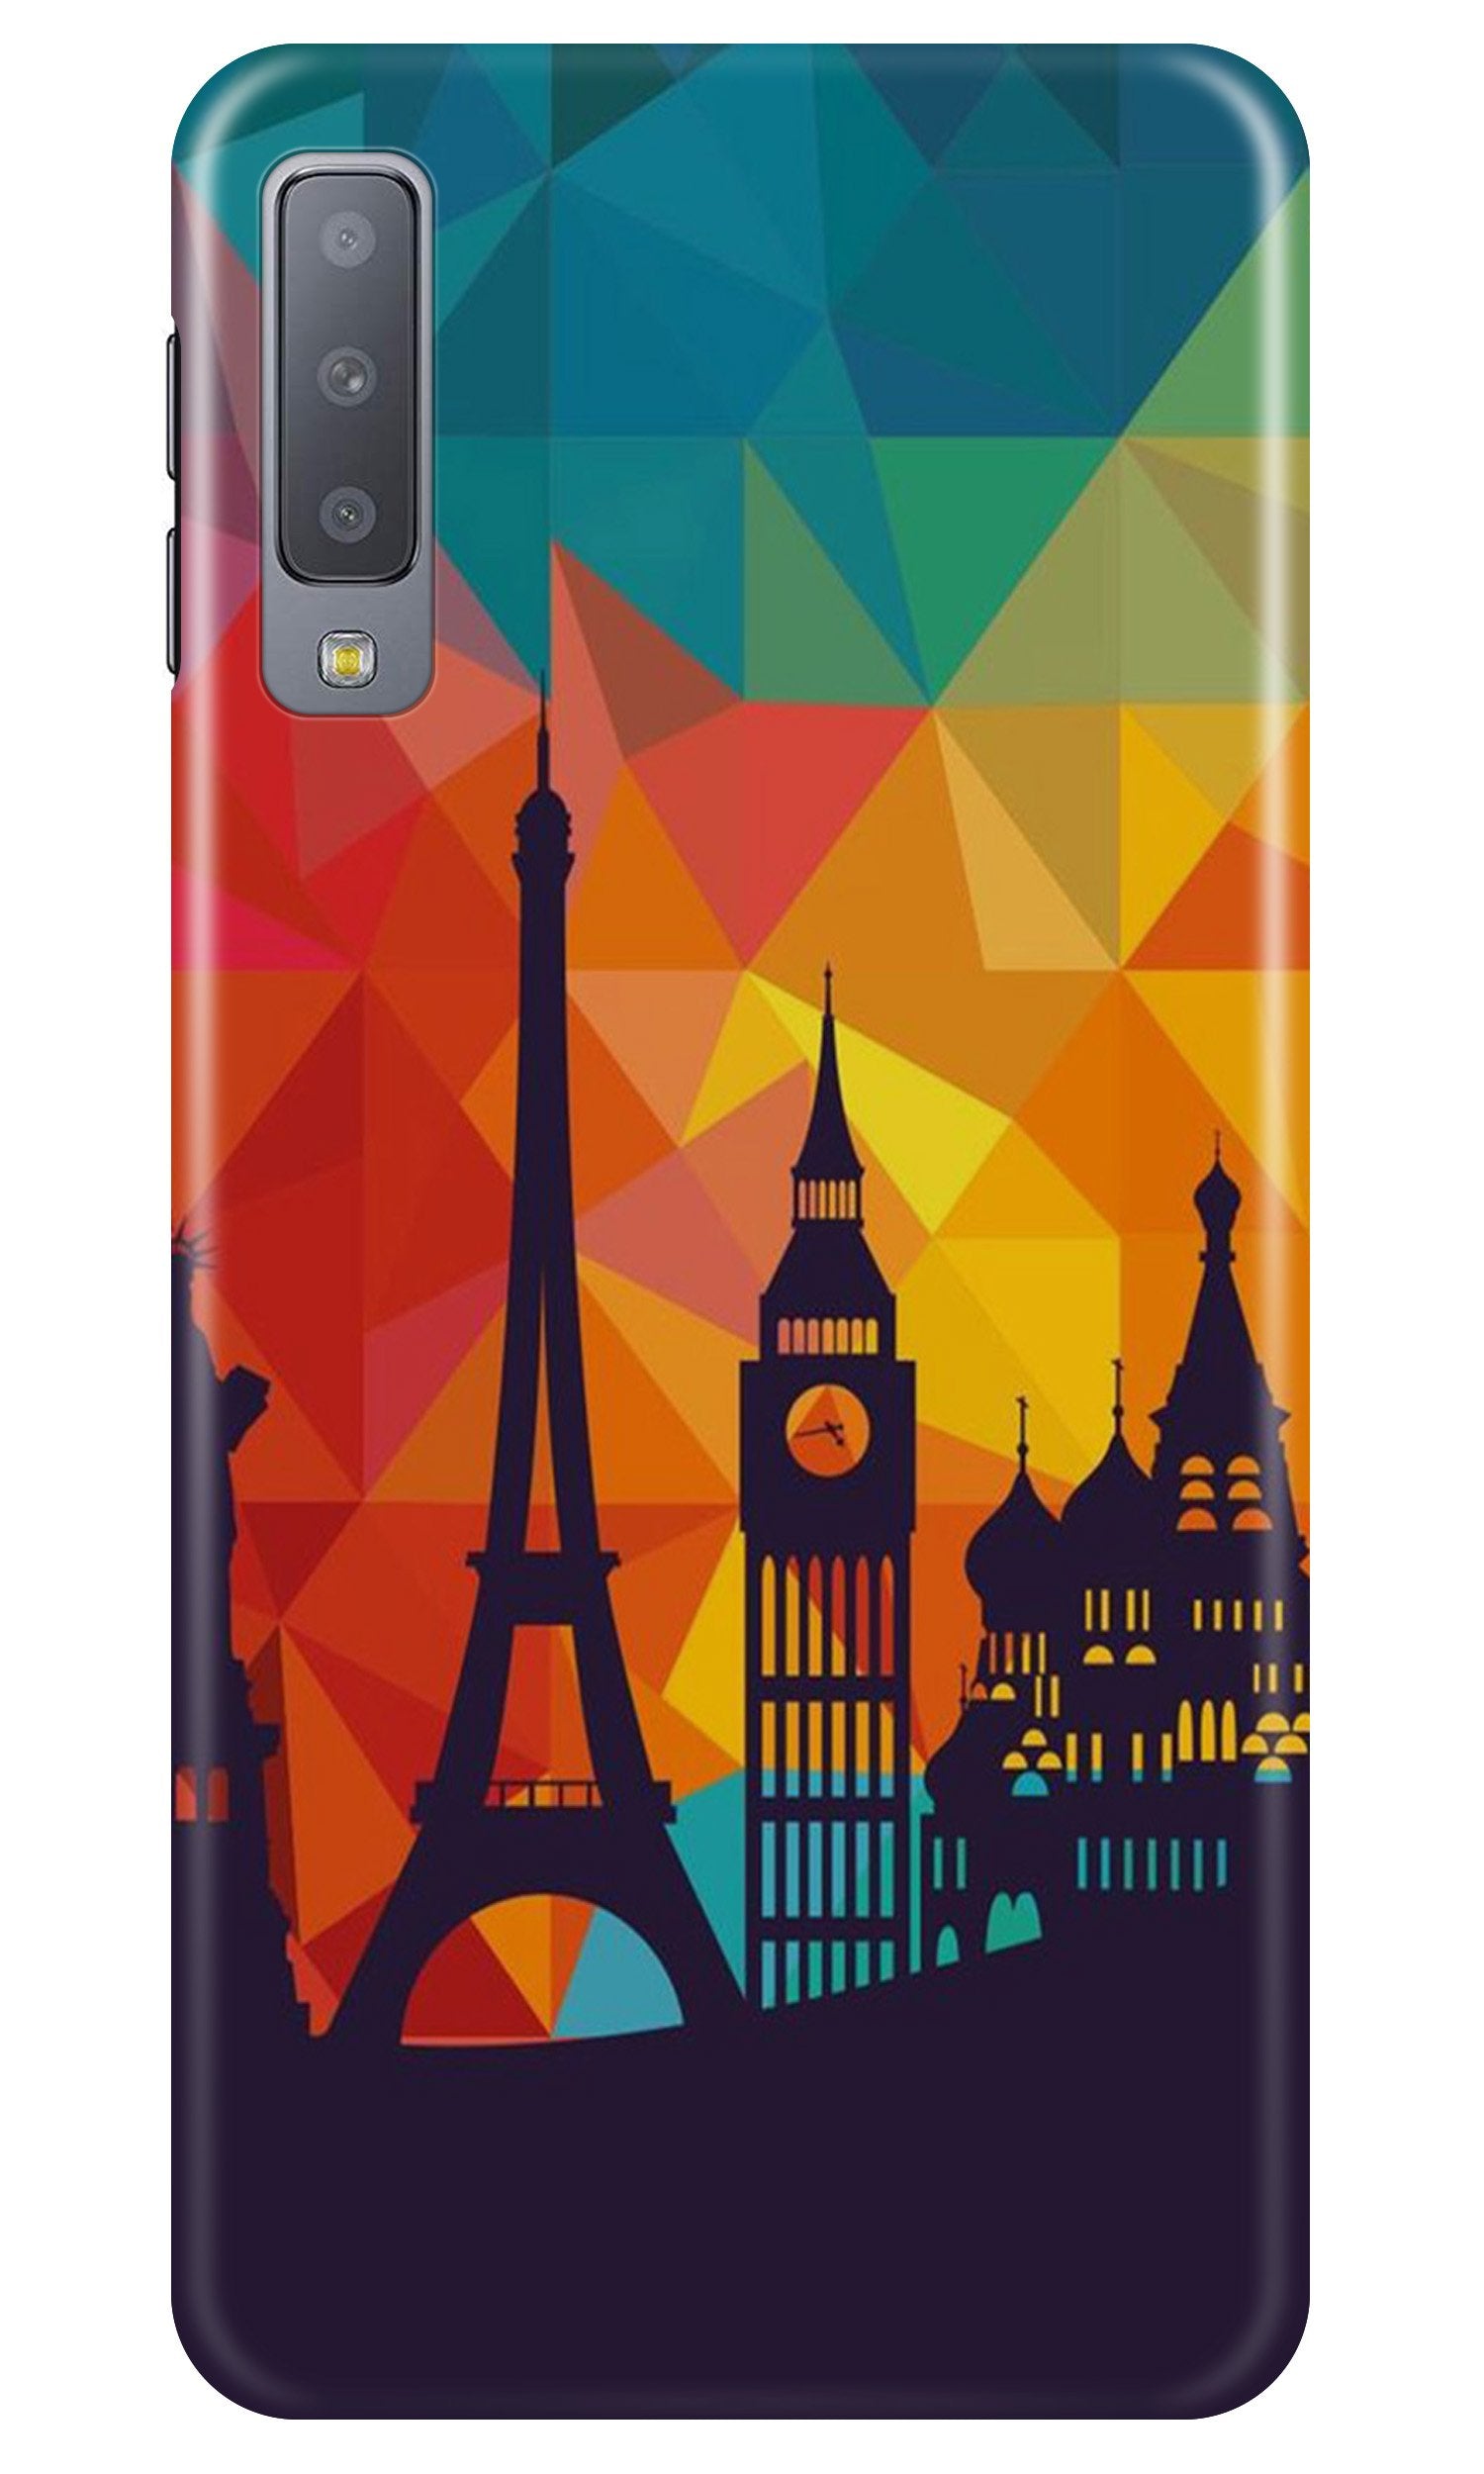 Eiffel Tower2 Case for Samsung Galaxy A50s